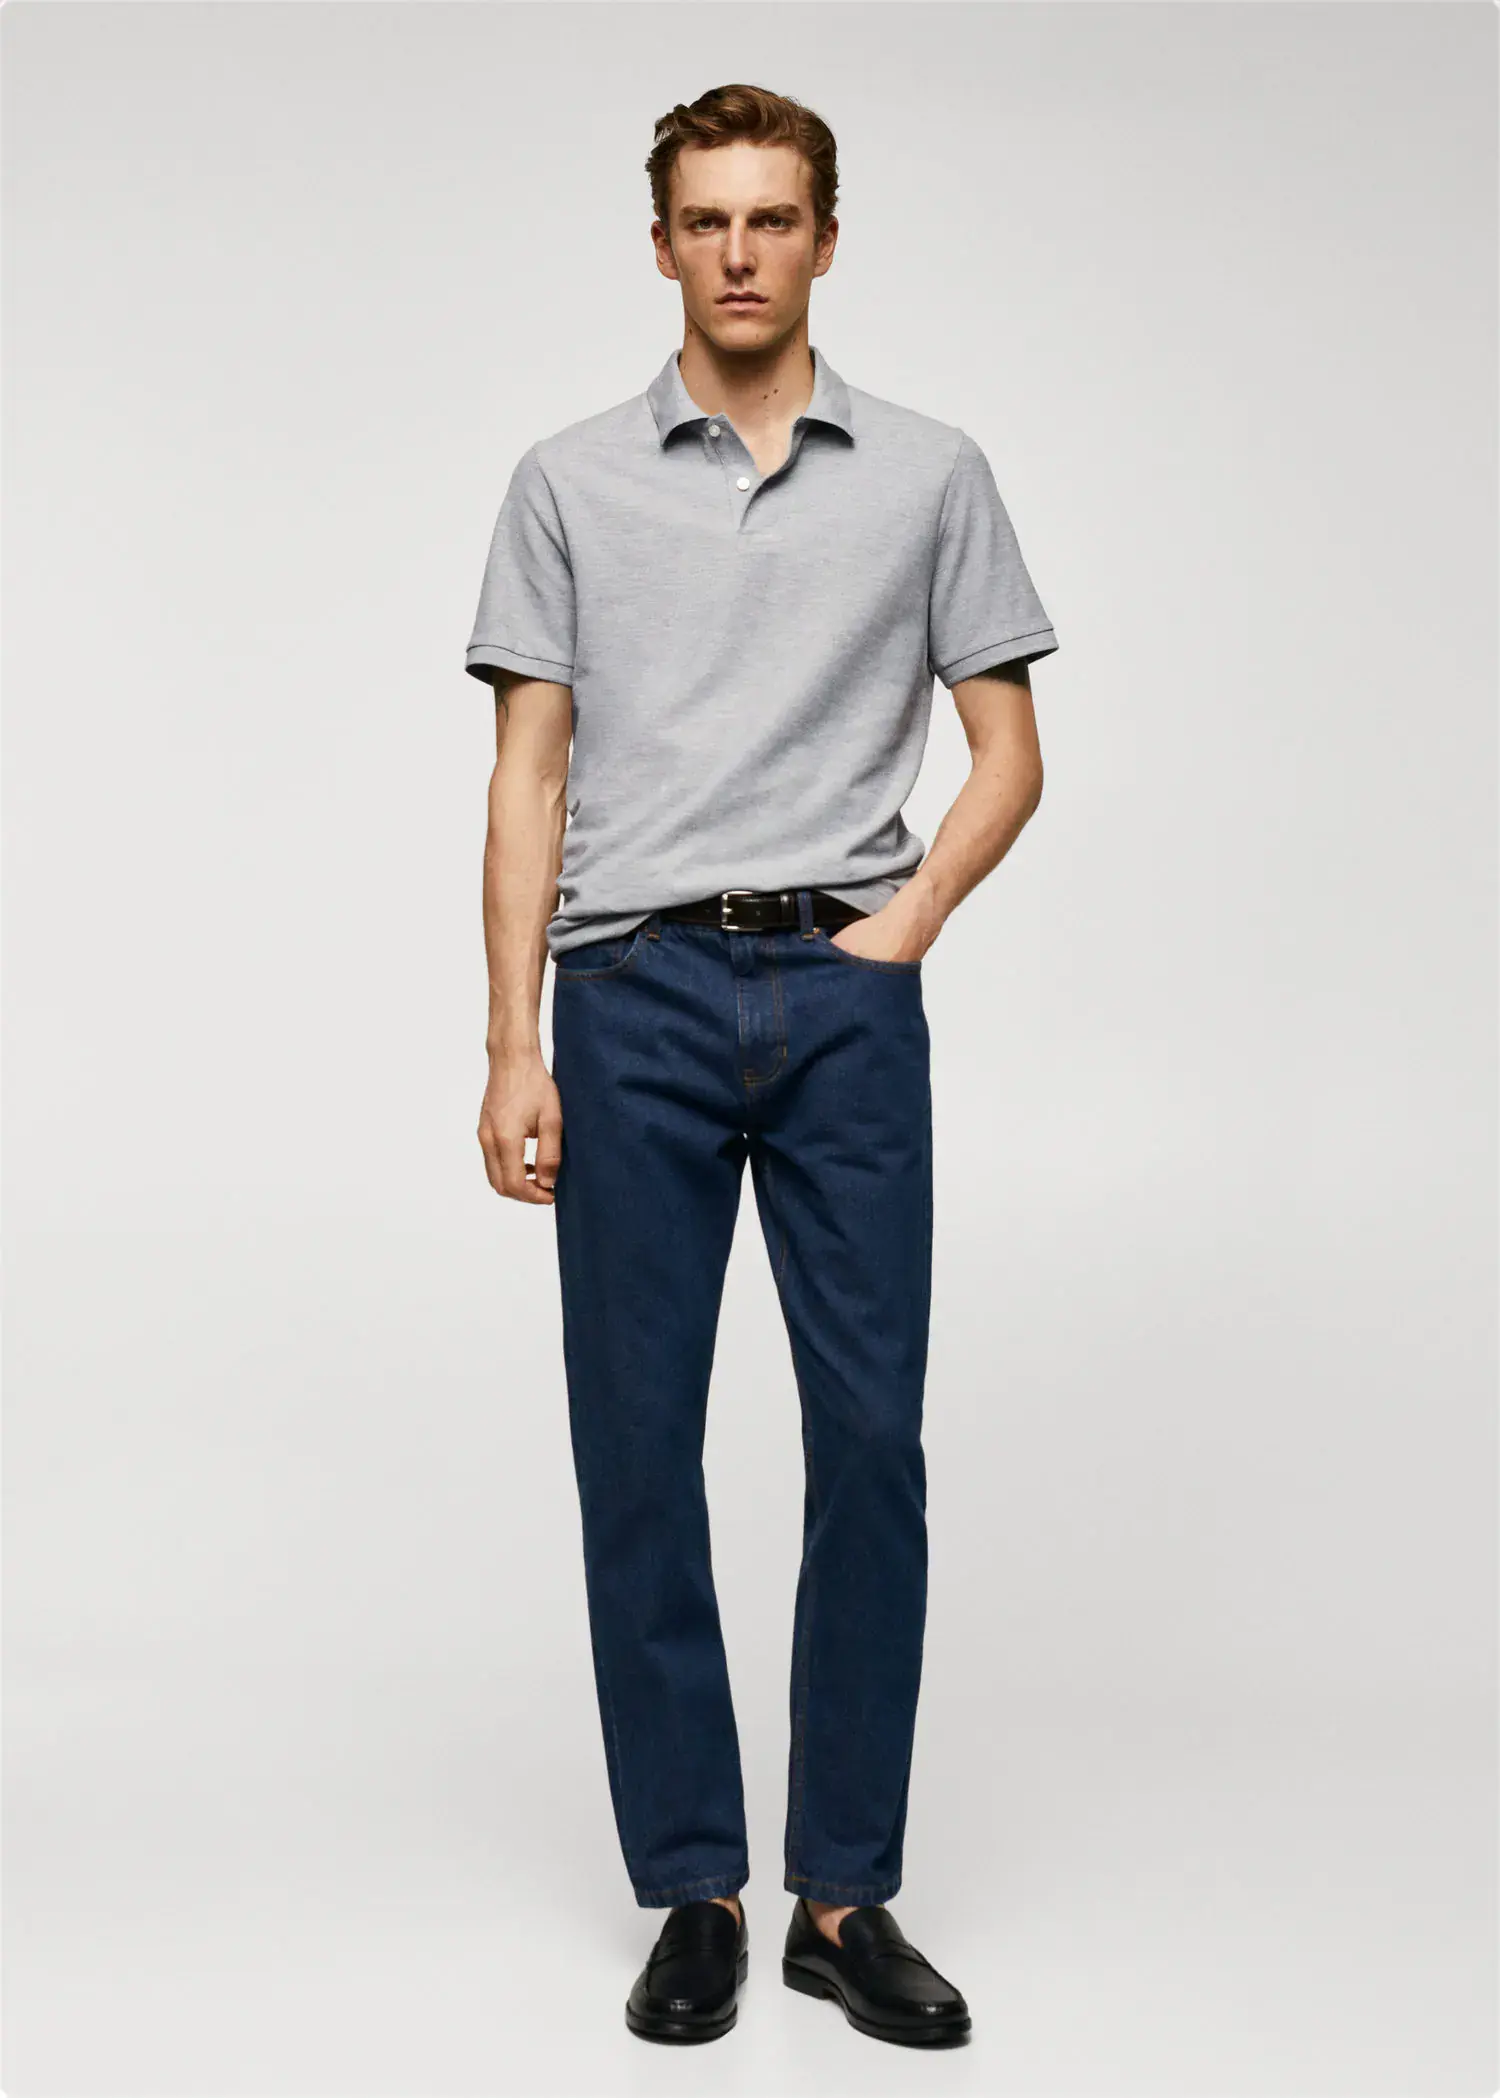 Mango 100% cotton pique polo shirt. a man in a gray polo shirt and blue pants. 